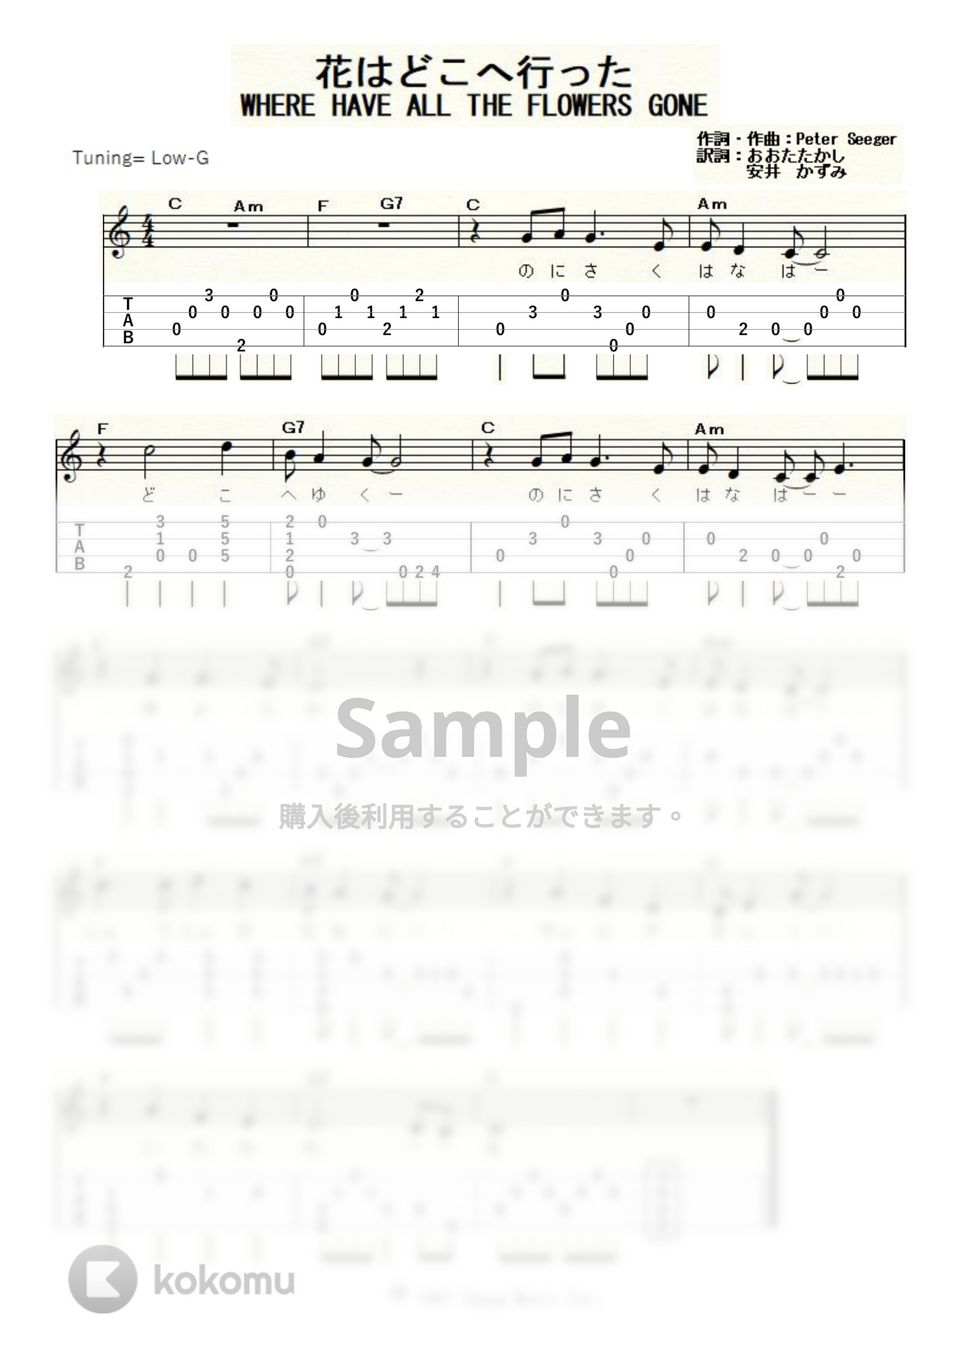 ピーター・ポール&マリー - 花はどこへ行った (ｳｸﾚﾚｿﾛ/Low-G/初級) by ukulelepapa